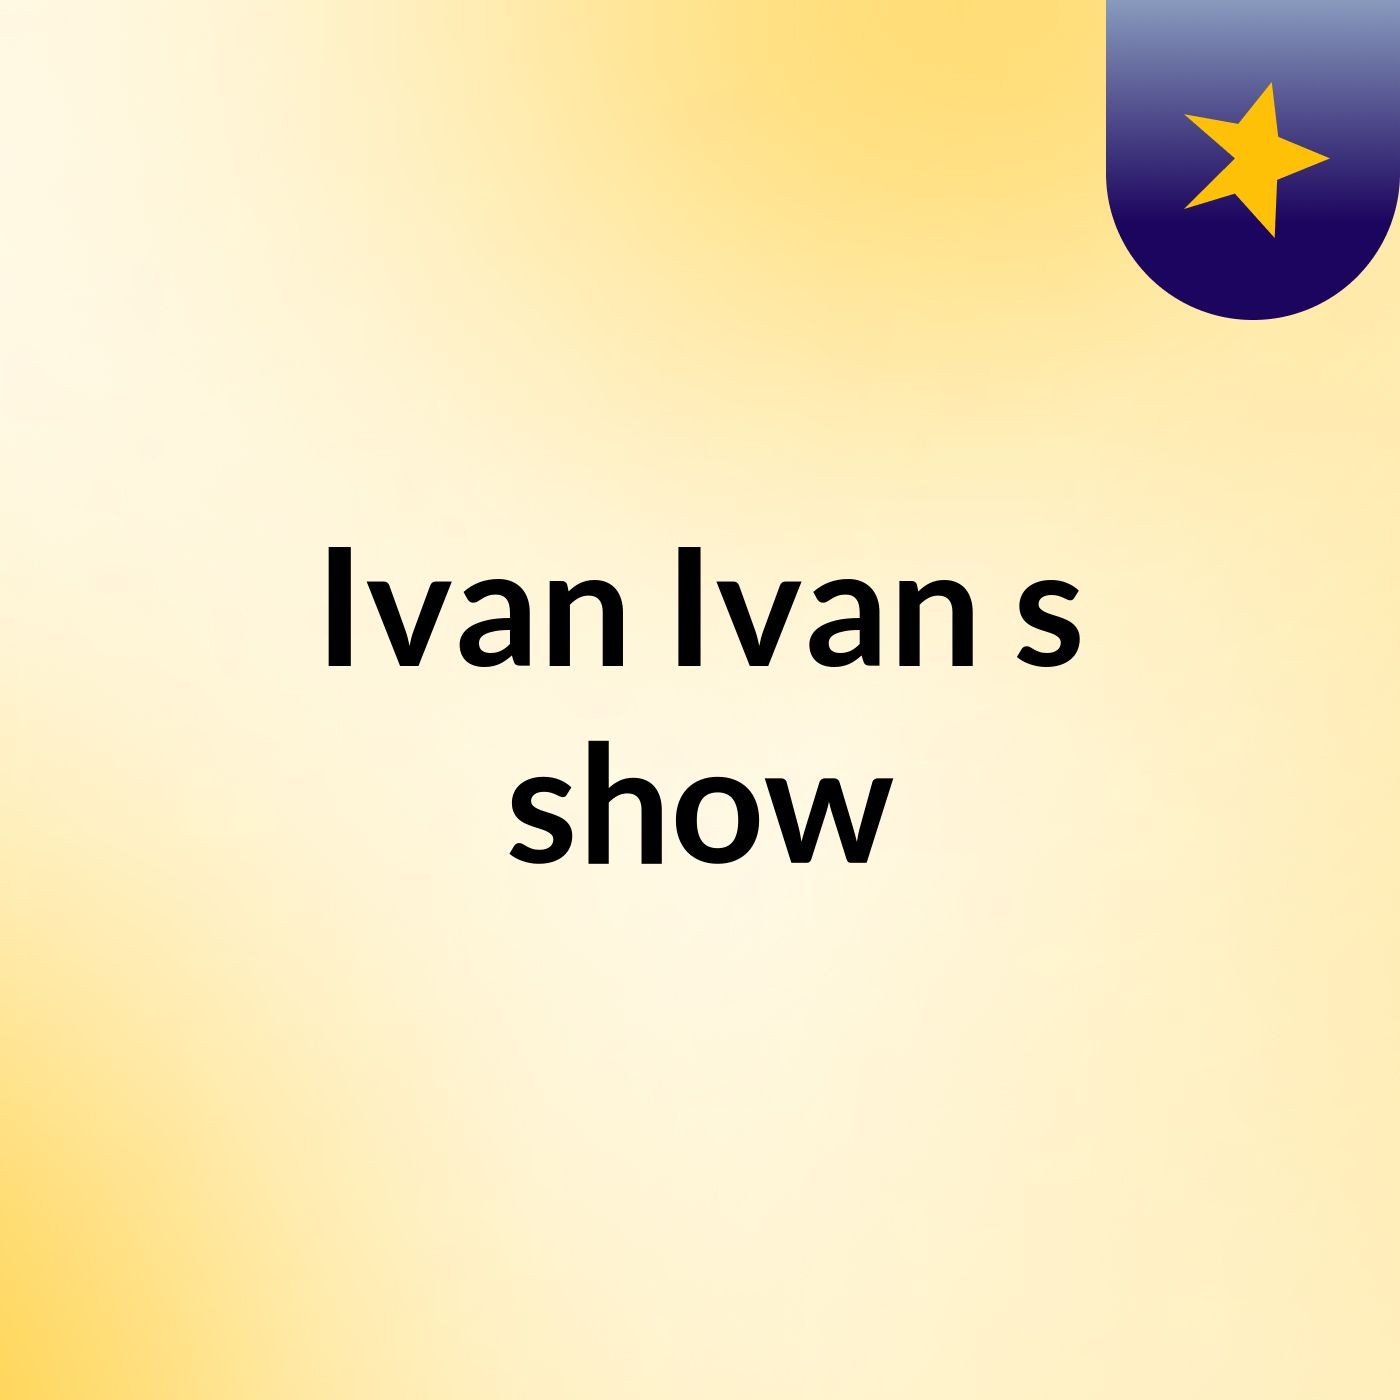 Ivan Ivan's show